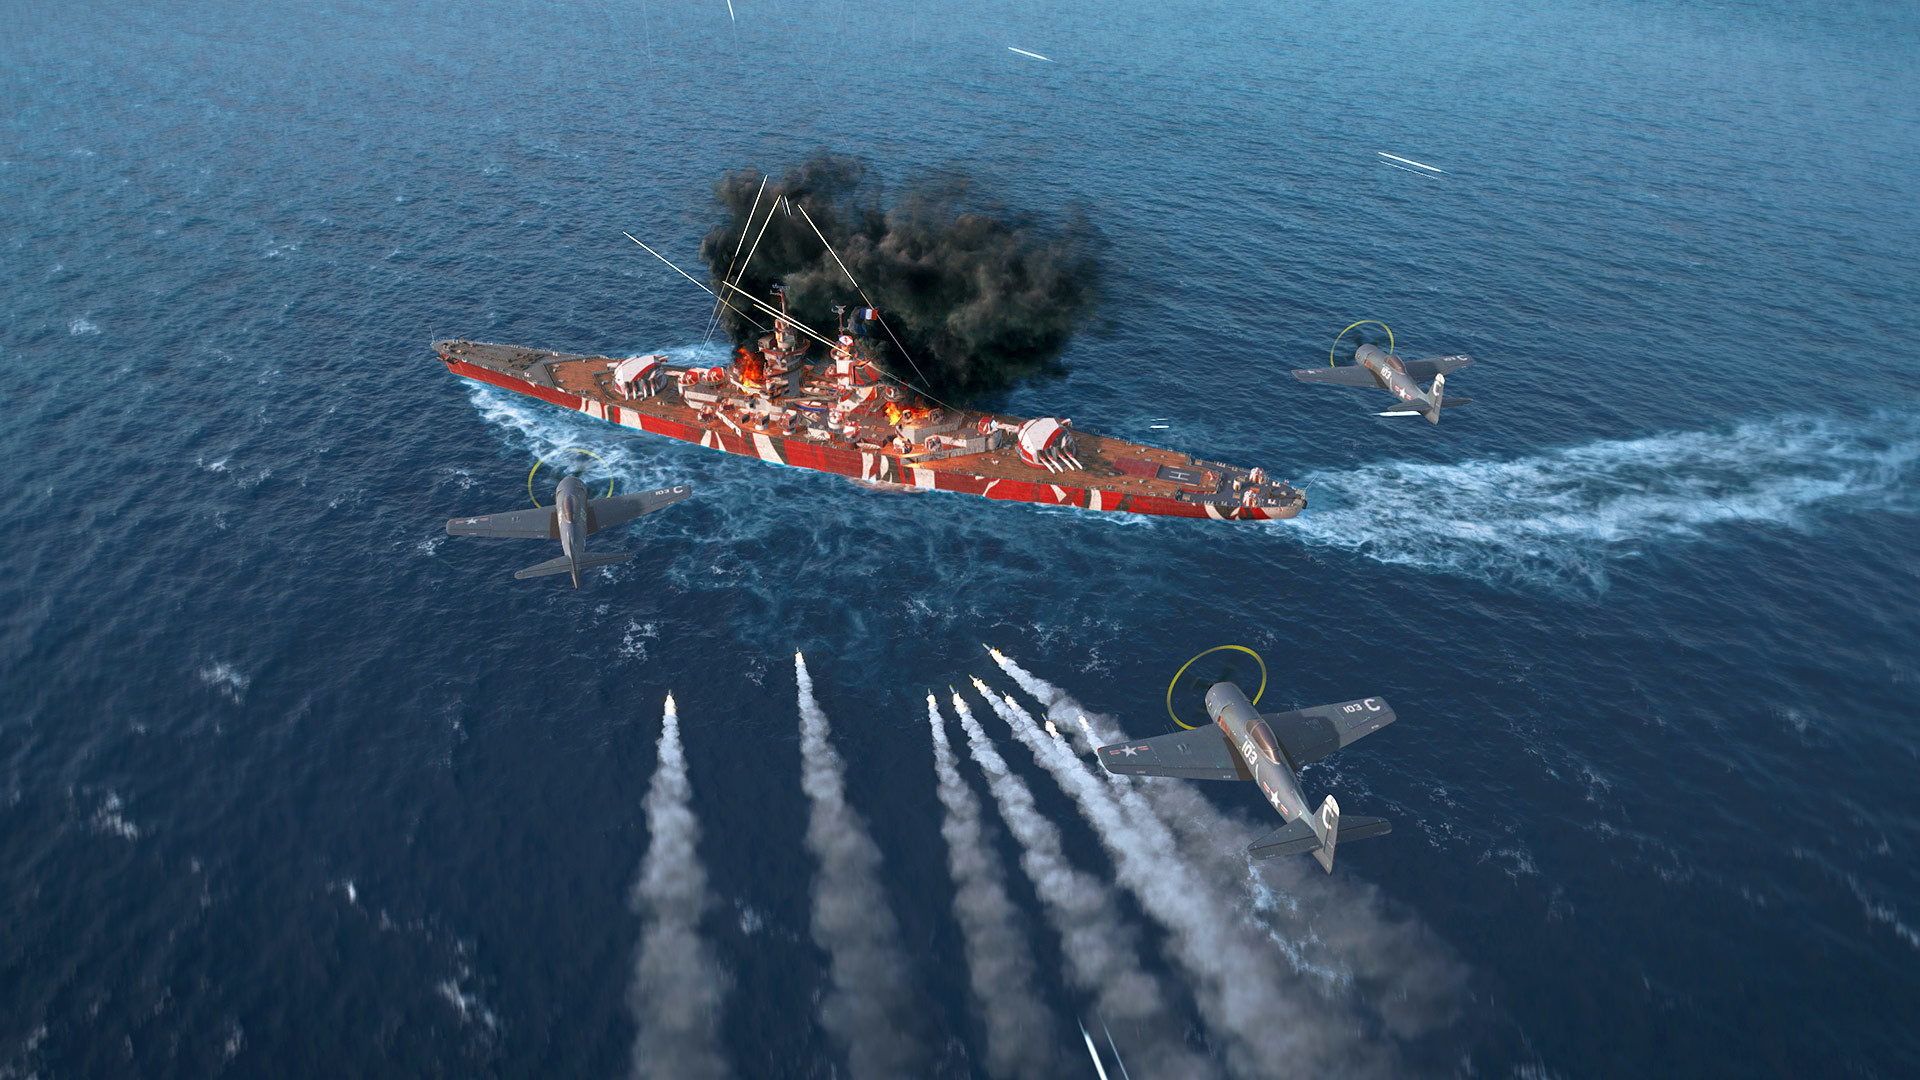 Jogo de Simulador de navios recebe versão gratuita para PC (Steam)